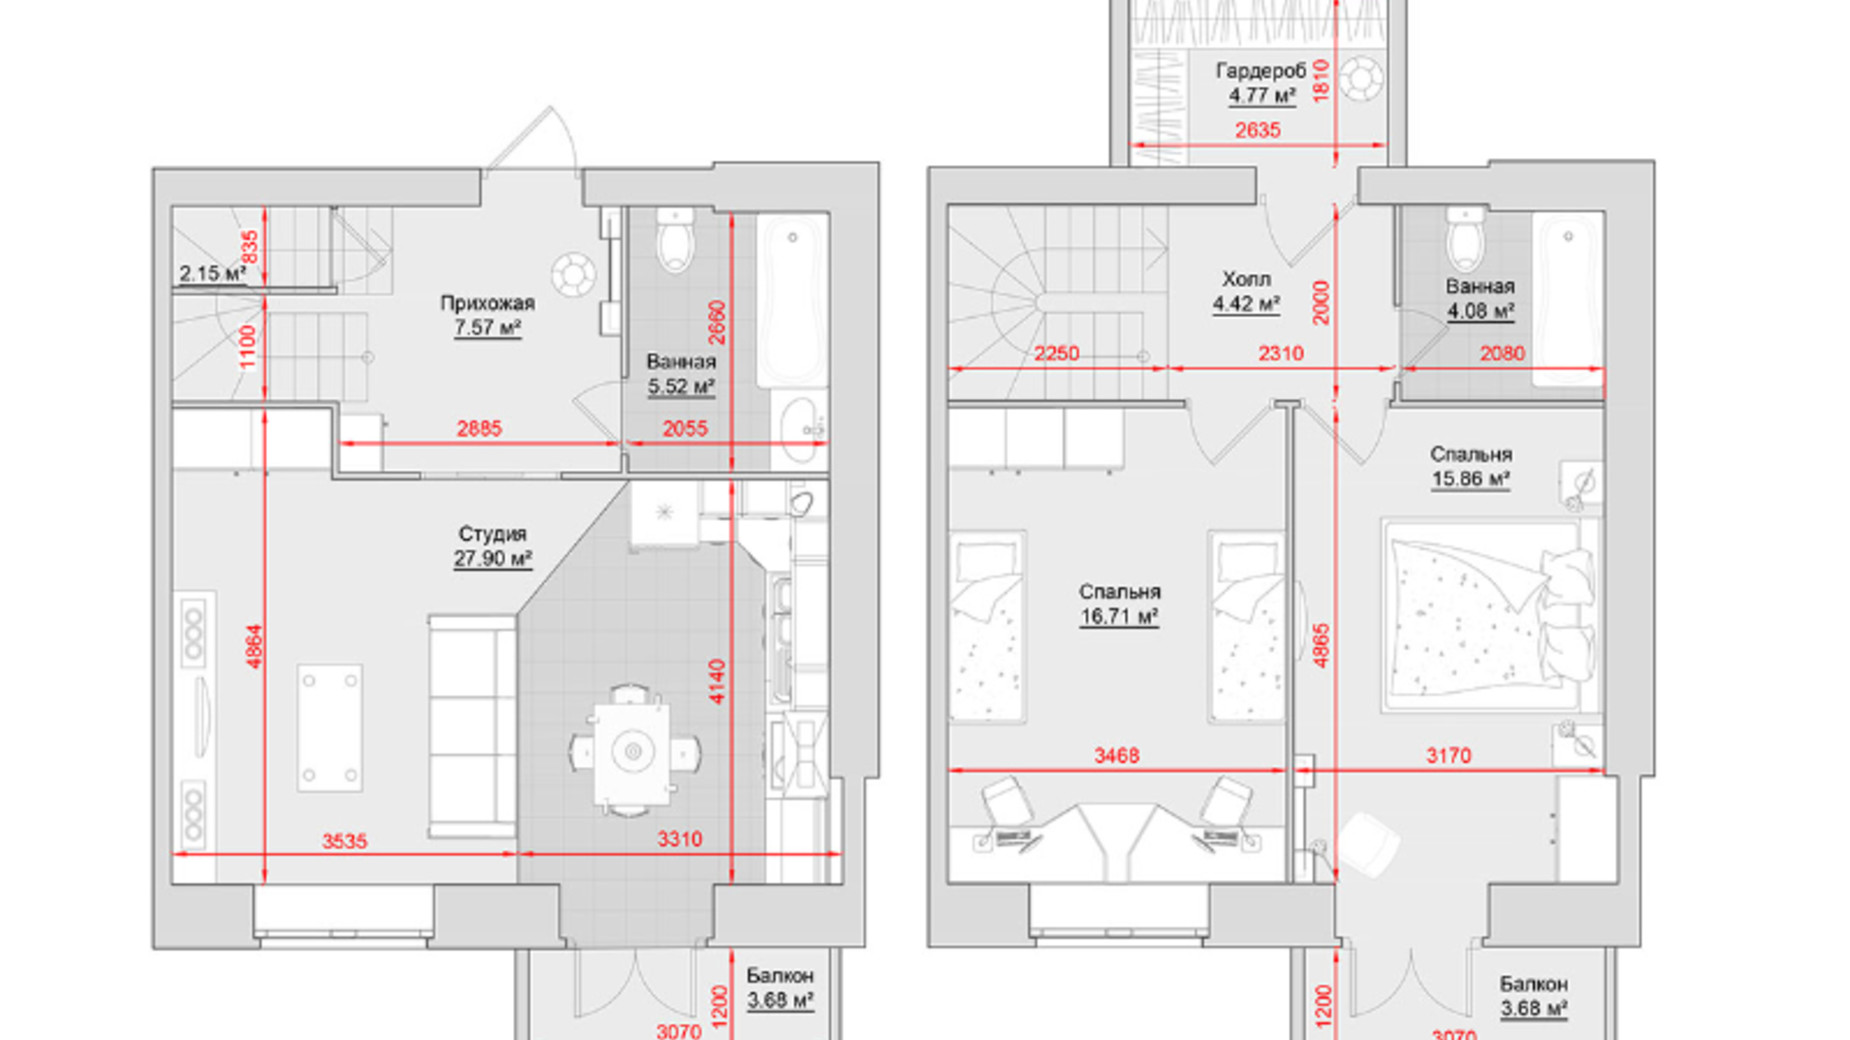 Планировка много­уровневой квартиры в ЖК по ул. Троицкая, 74 98 м², фото 631818